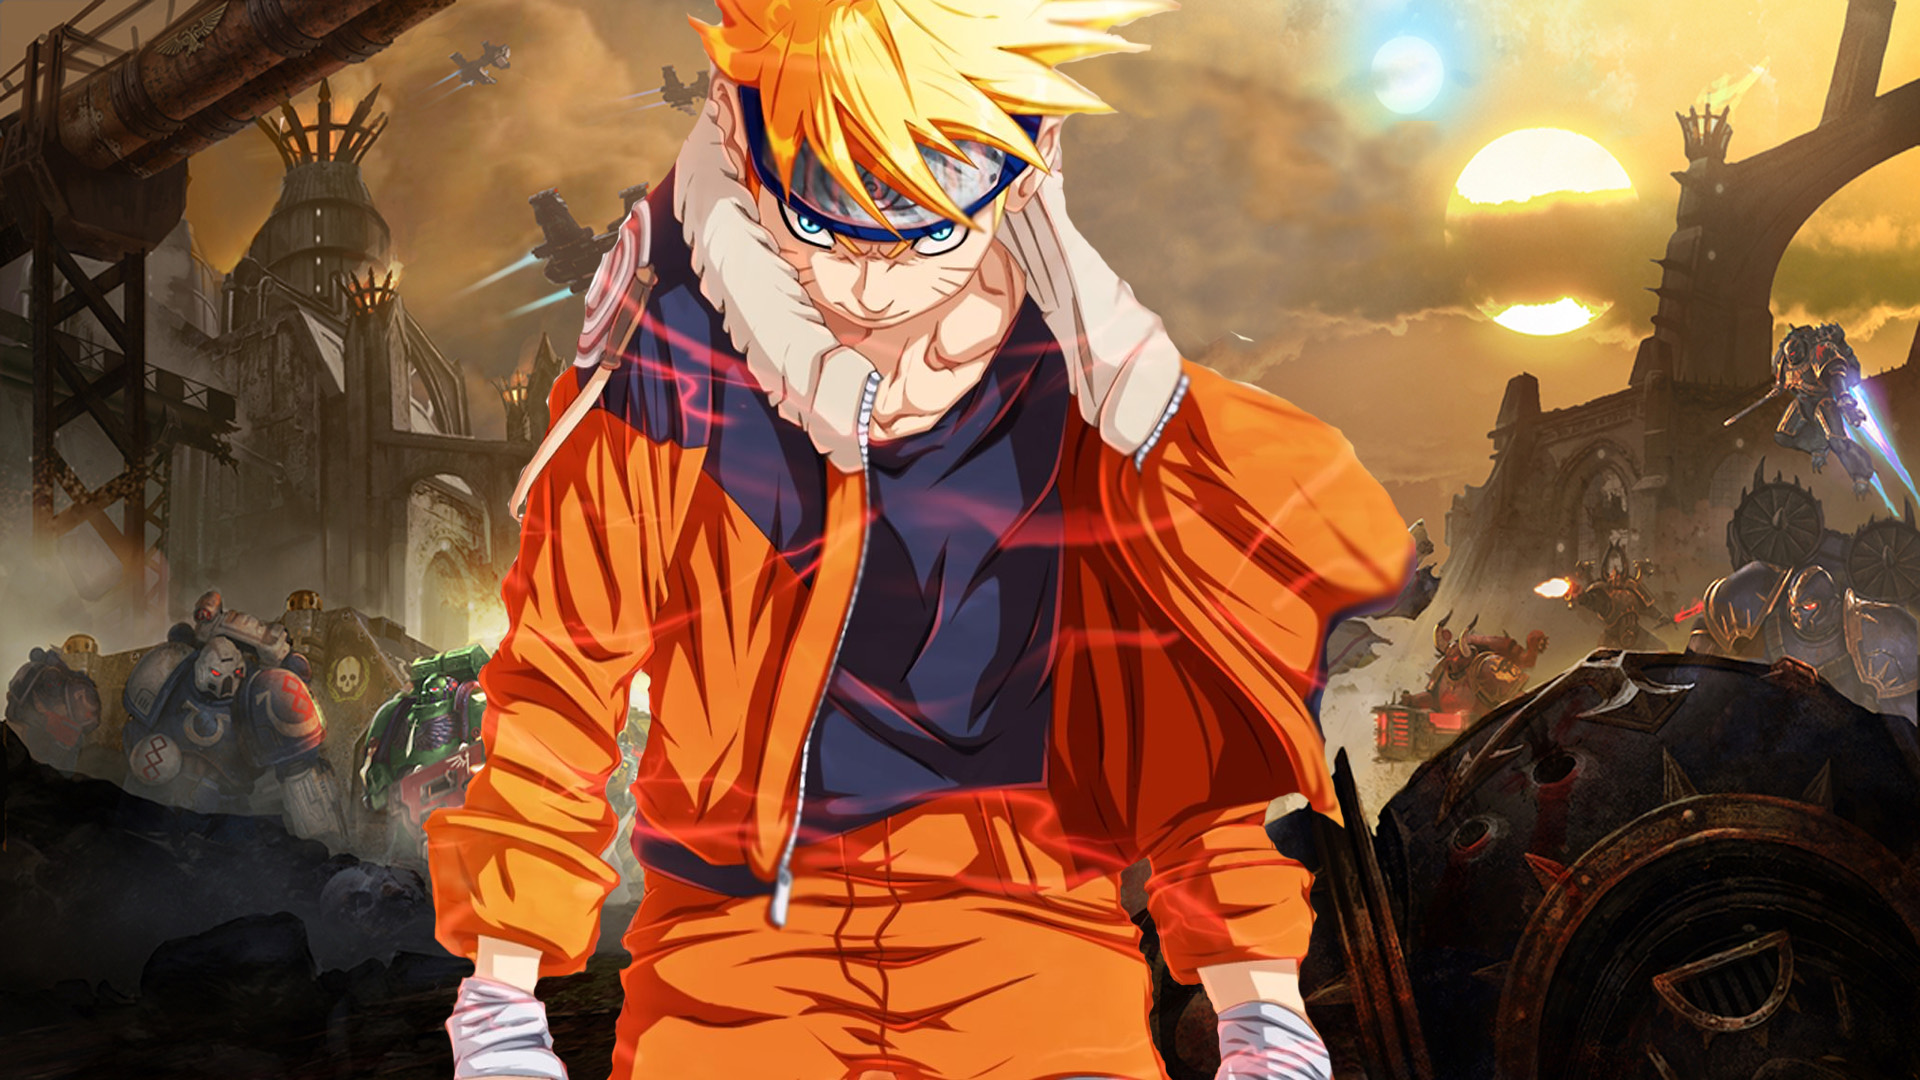 R E N E G A E D Z — [id: a full-body drawing of Naruto Uzumaki from